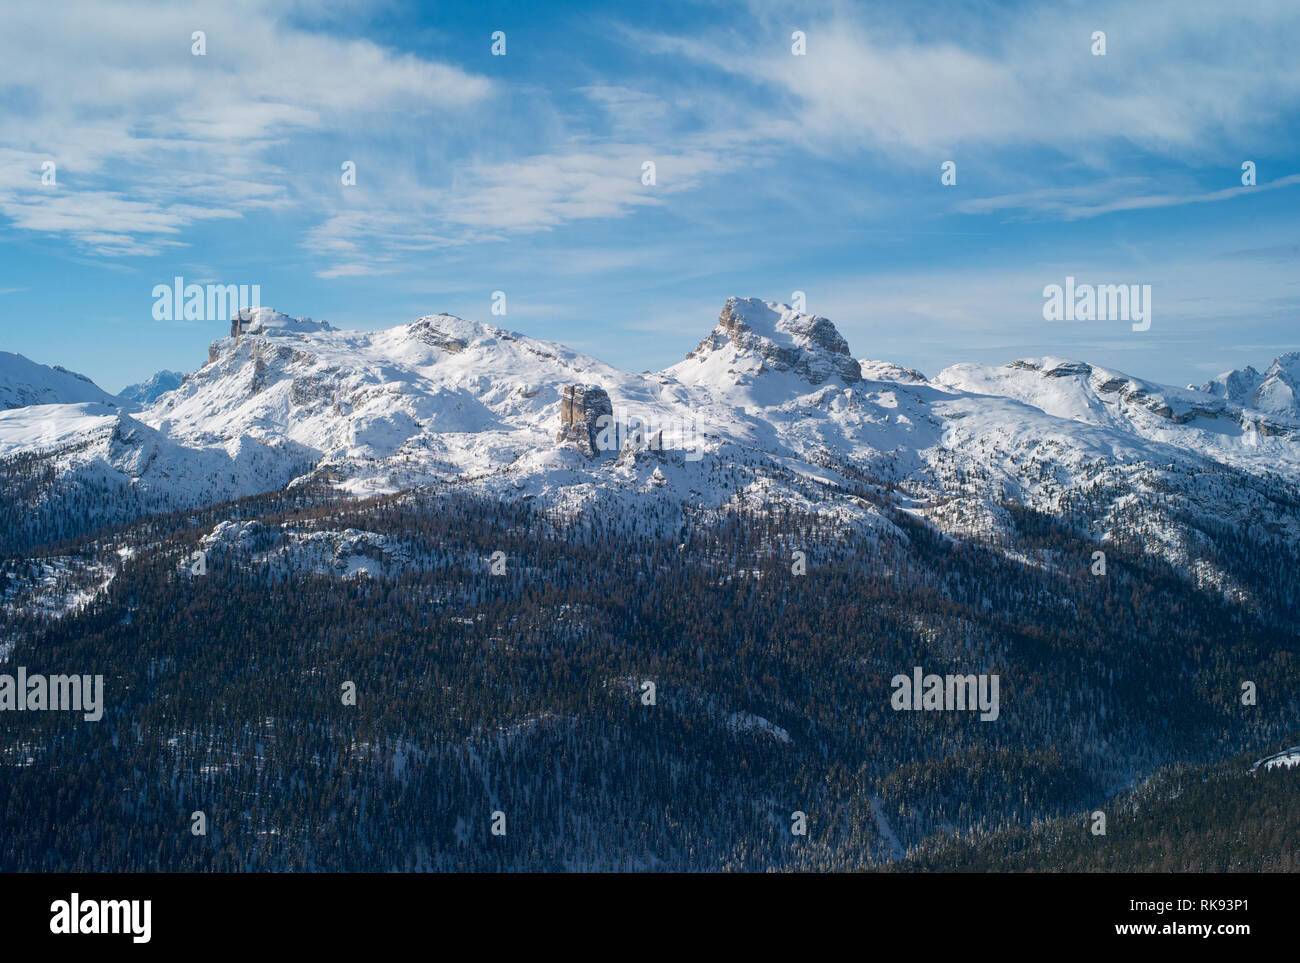 Luftaufnahme der Berge von den Cinque Torri Skigebiet Cortina d'Ampezzo in den italienischen Dolomiten mit Schnee Stockfoto